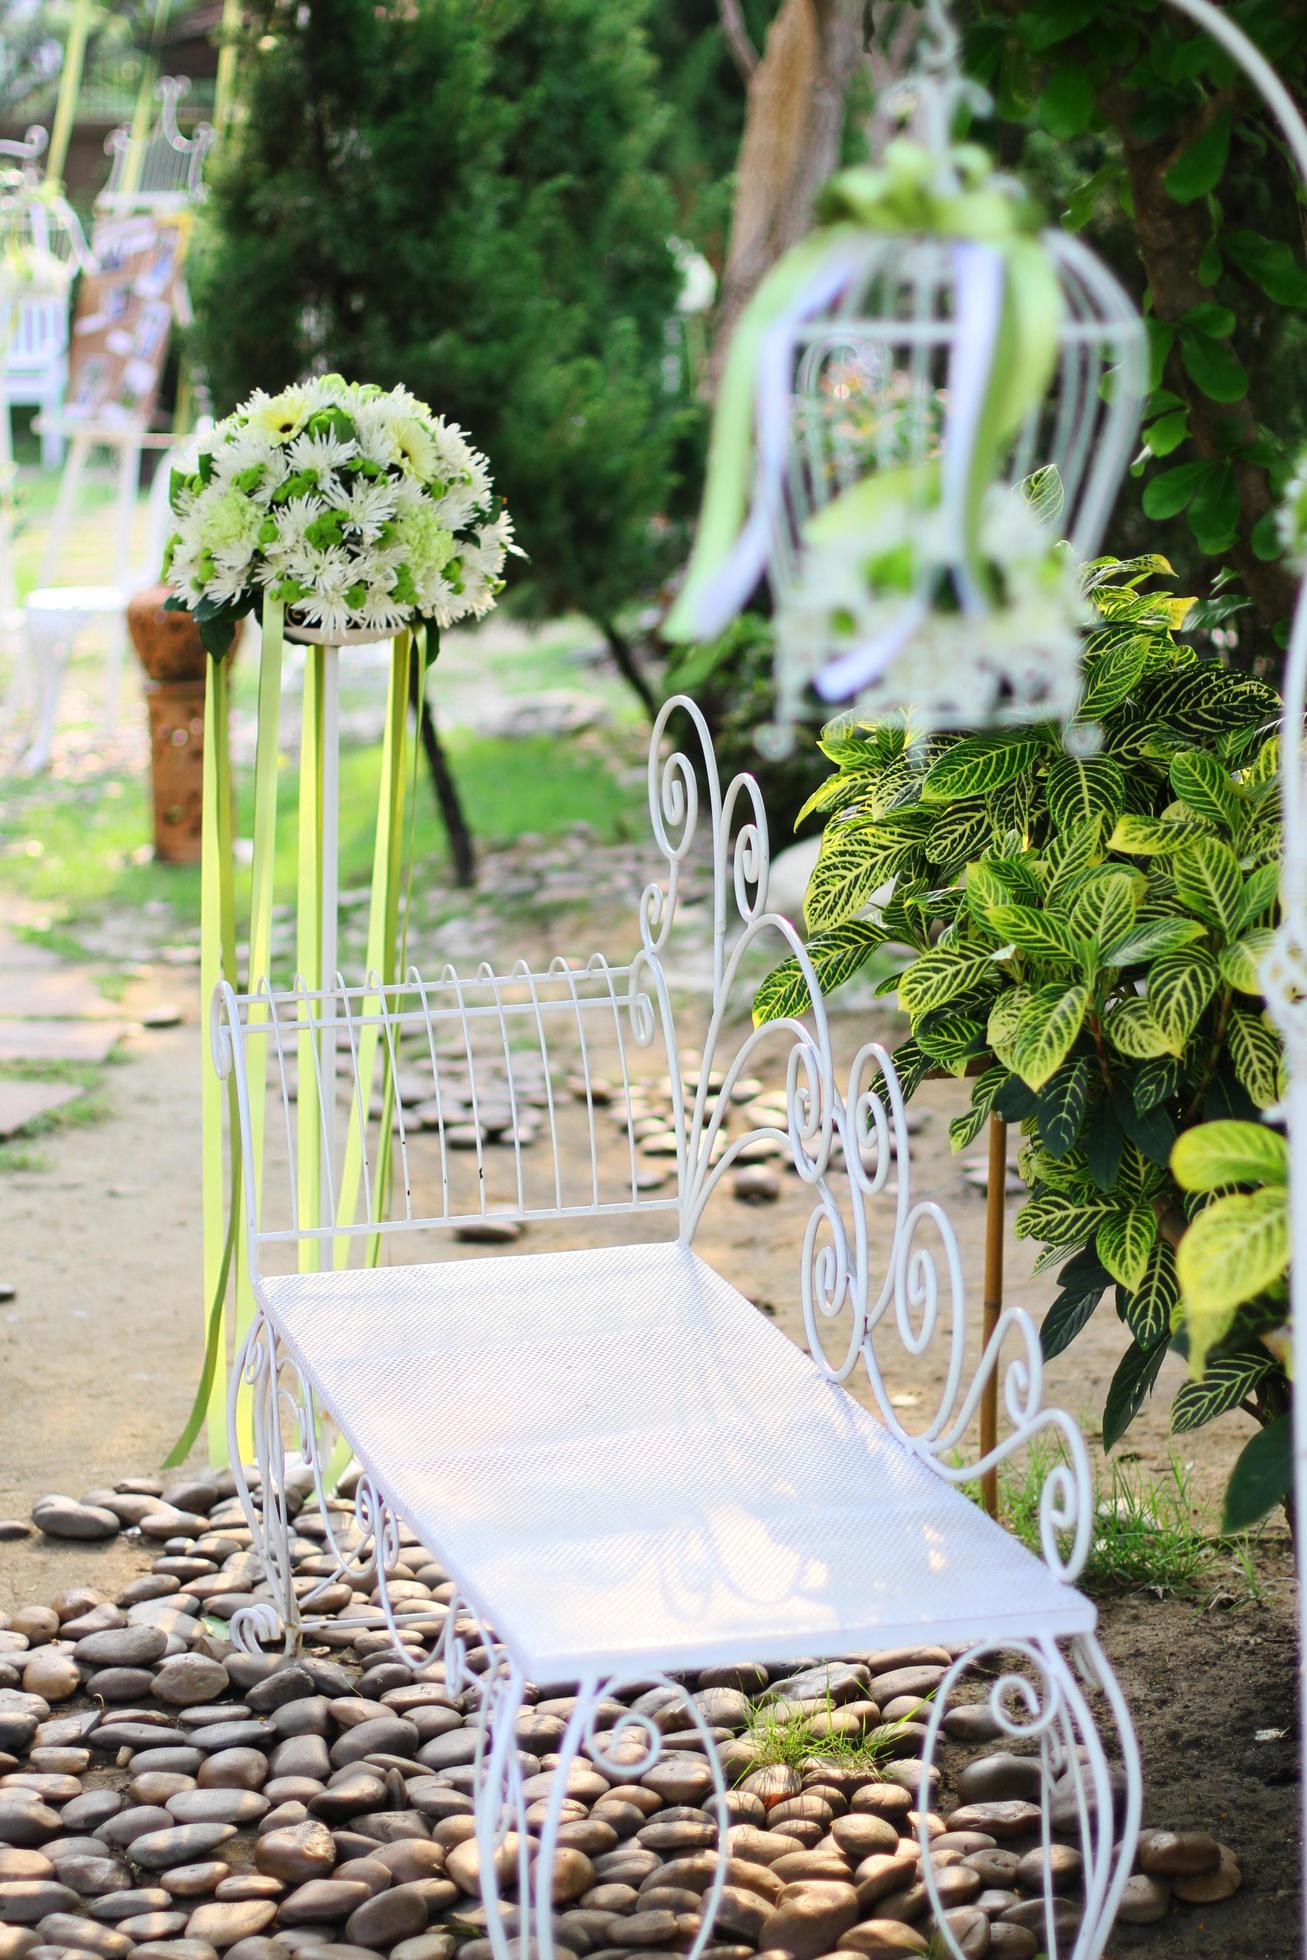 beginsel Zwitsers tweeling wit vogelkooi, stoel decoratie met rozen en wit bloemen hangende decoratie  in tuin voor bruiloft ceremonie 22580921 stockfoto bij Vecteezy